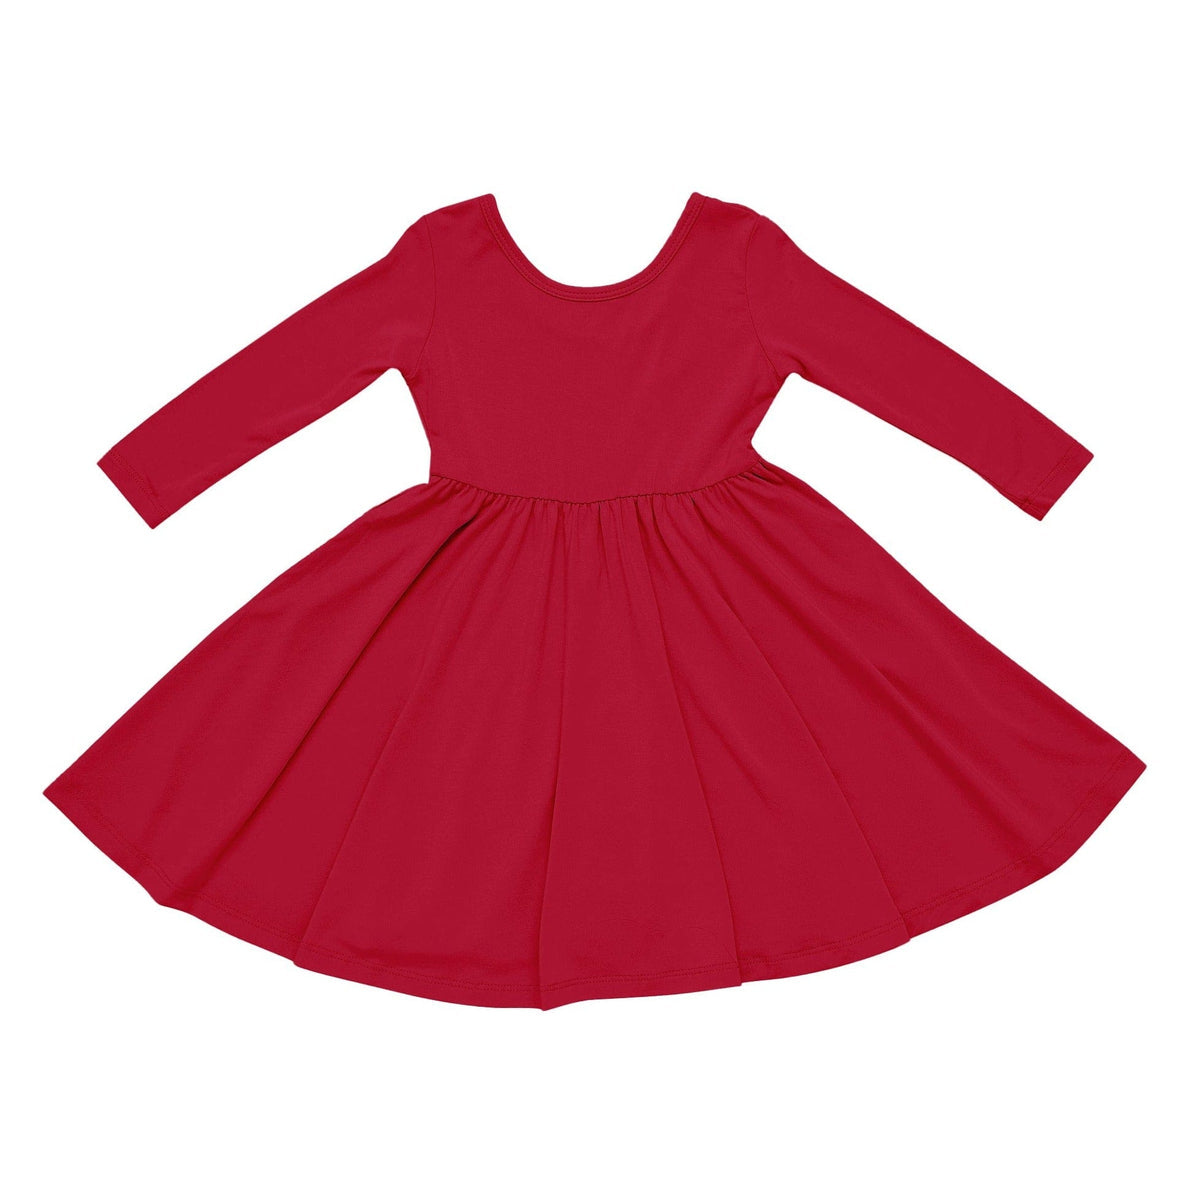 Long Sleeve Twirl Dress in Cardinal